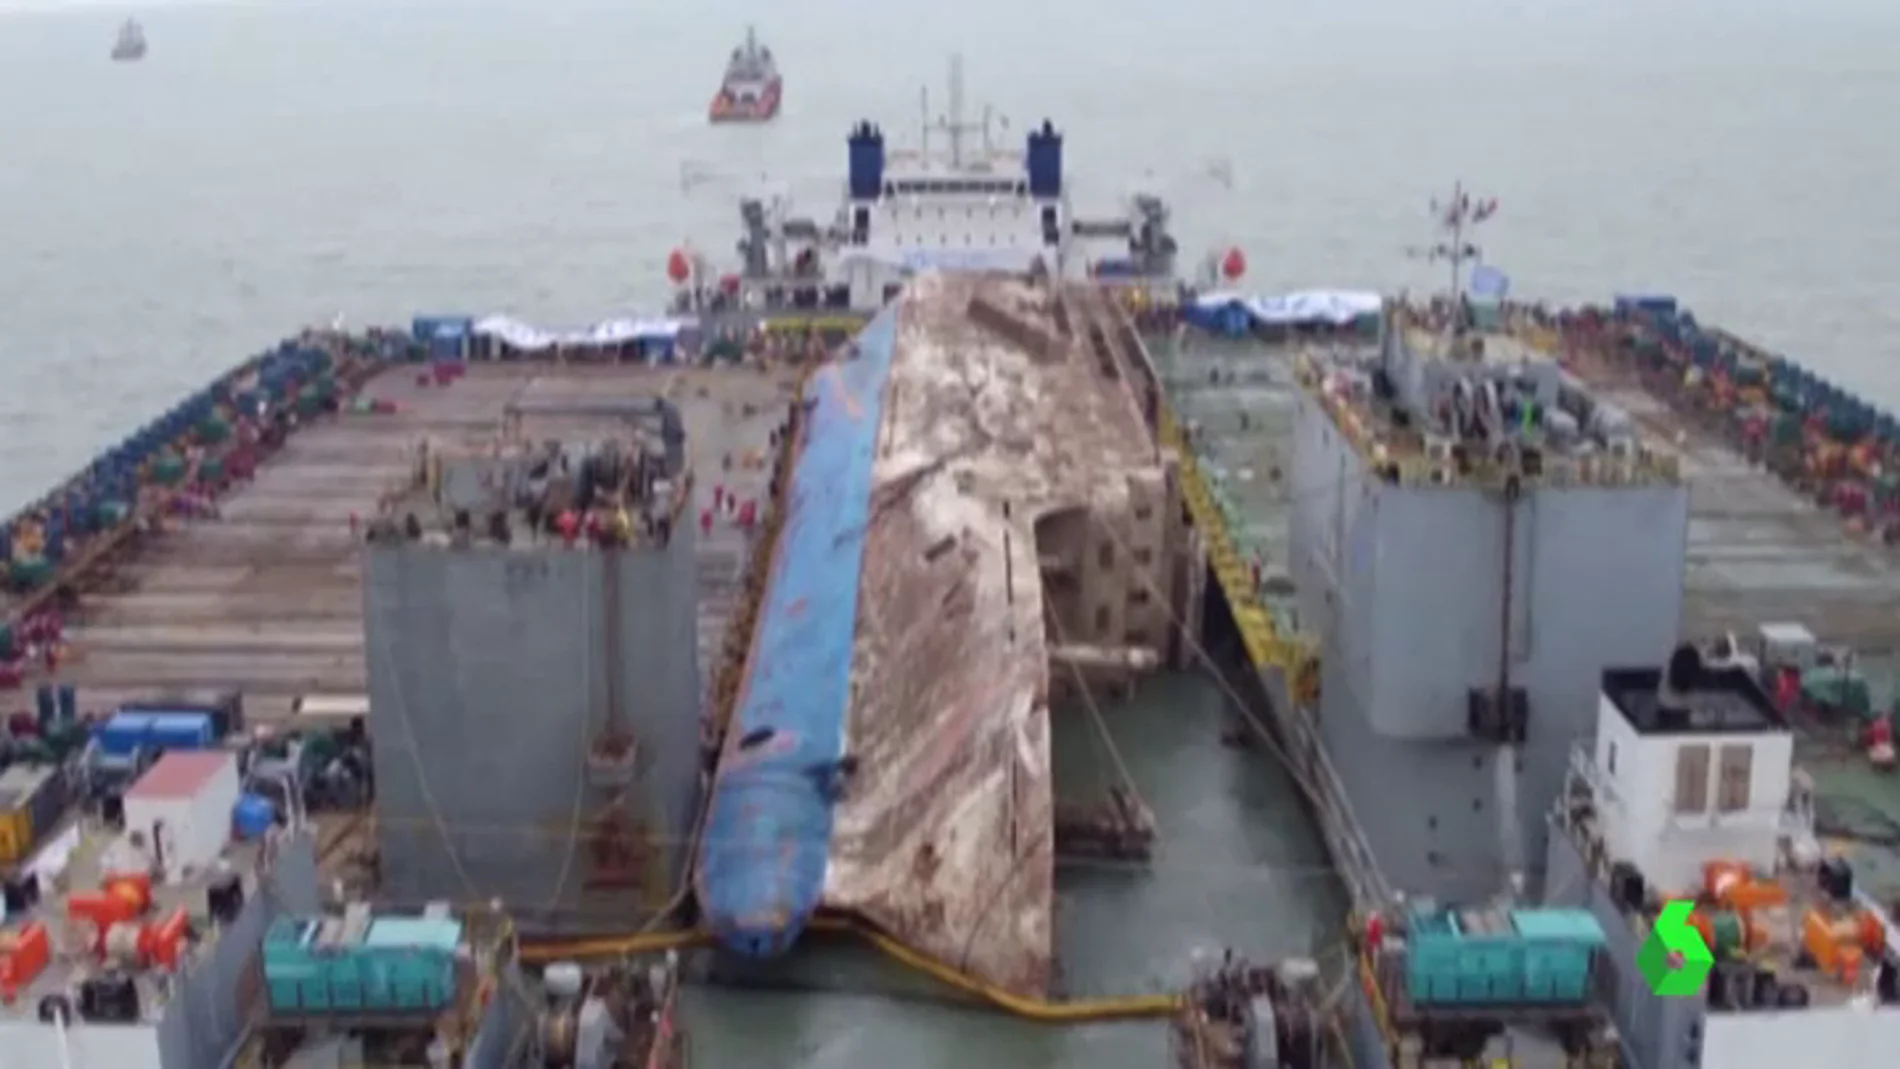 Reflotan el buque 'Sewol' tres años después de su naufragio en el que murieron 300 personas.